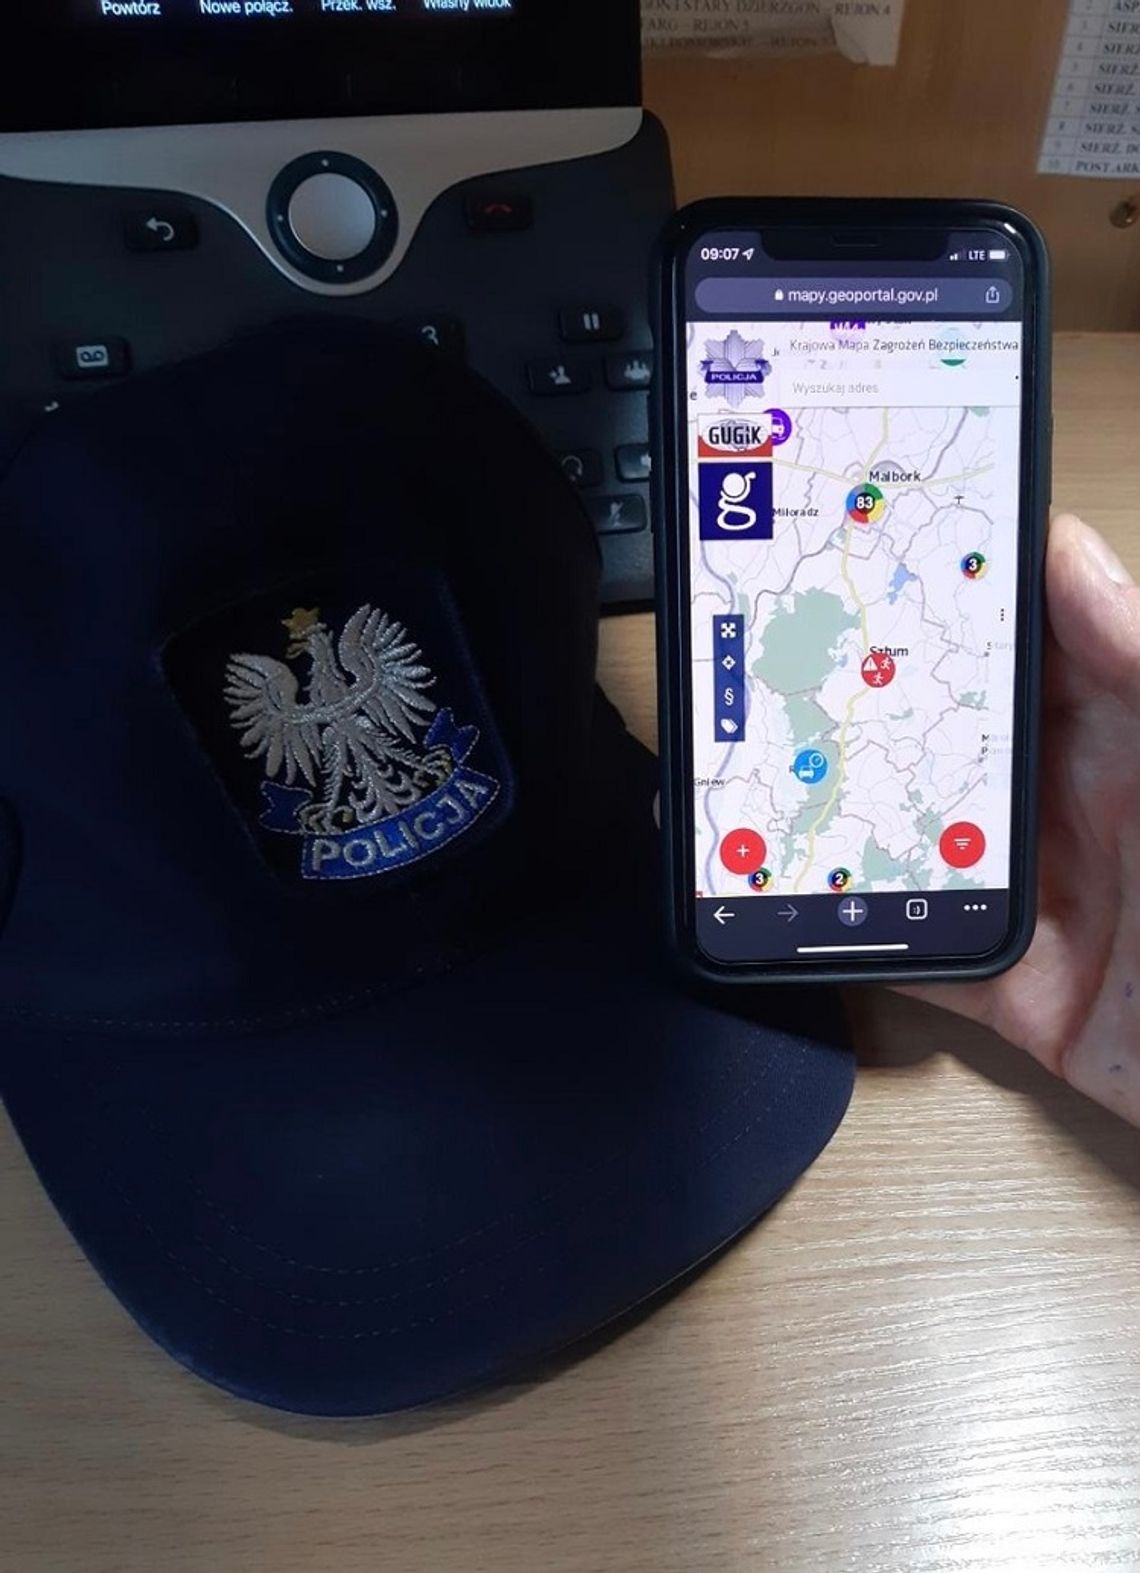 Krajowa Mapa Zagrożeń Bezpieczeństwa - sztumscy policjanci zachęcają do korzystania z aplikacji.